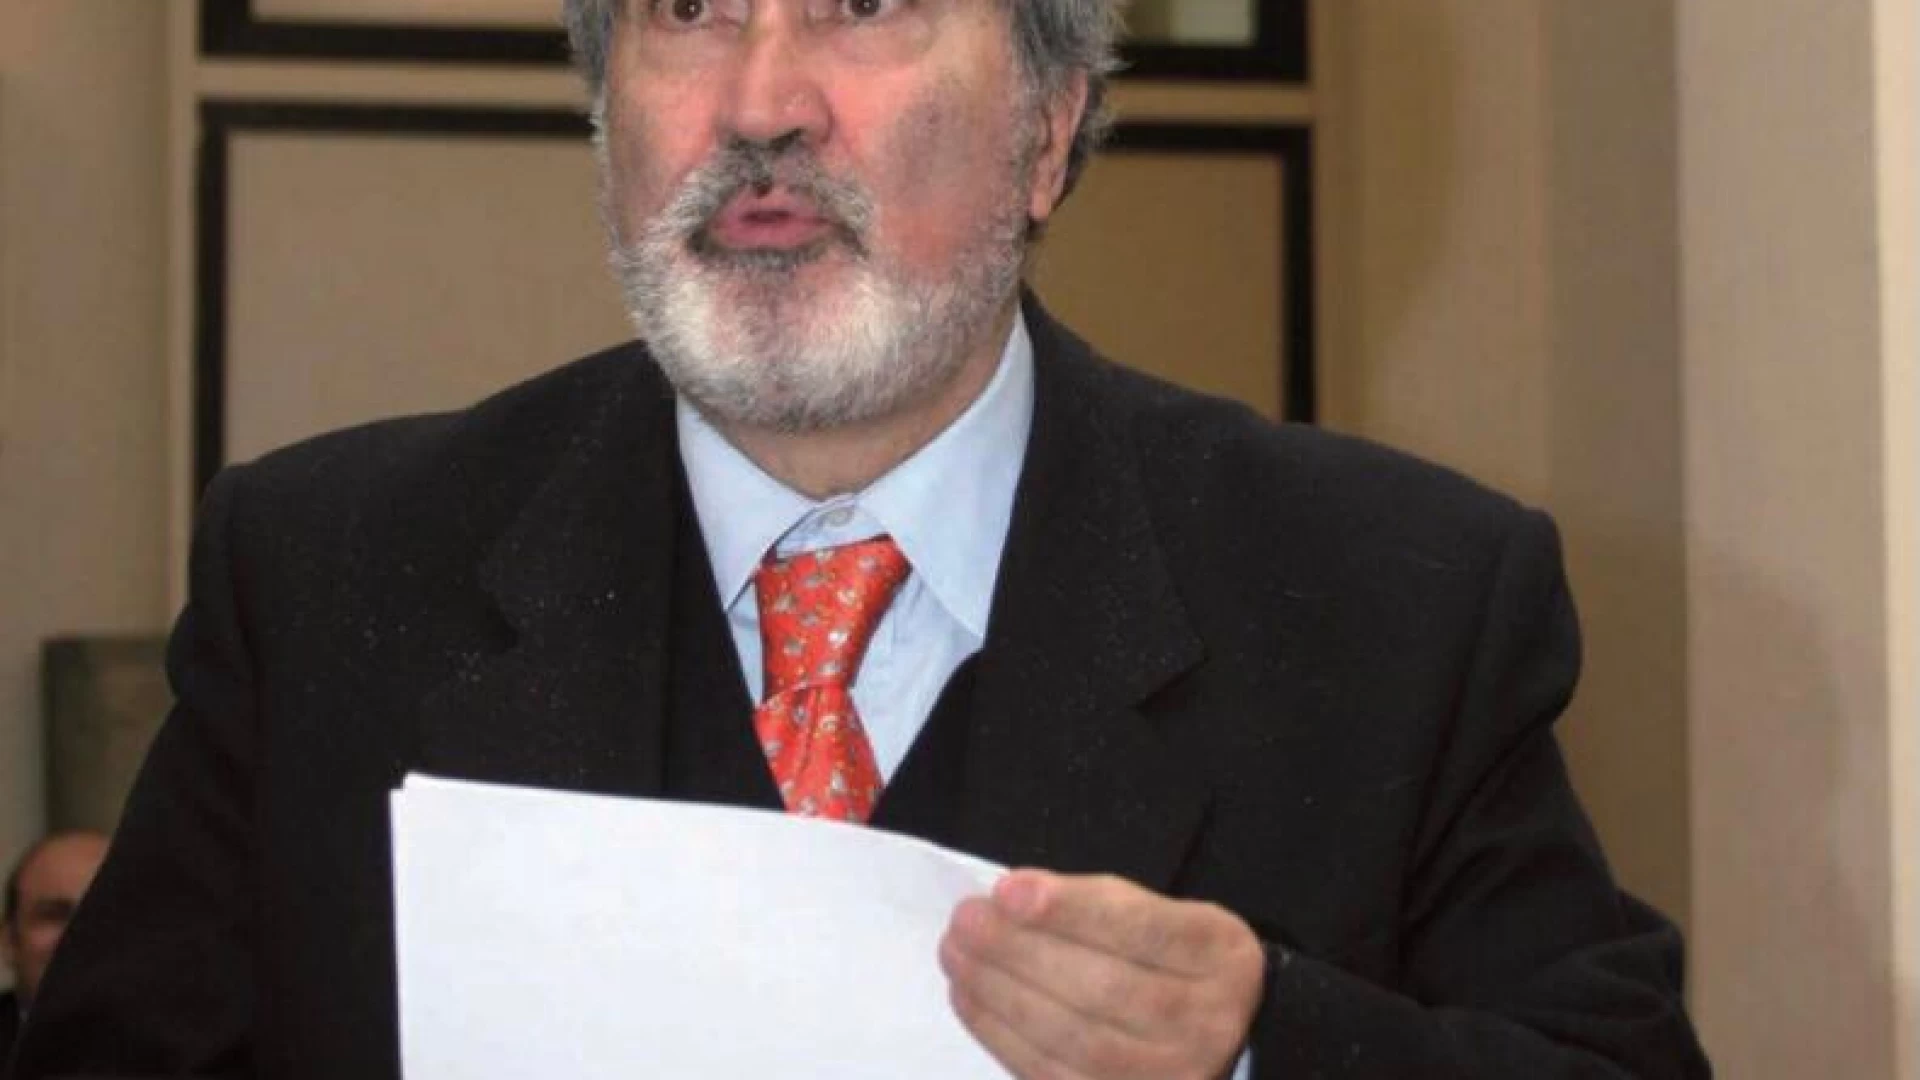 Molise in lutto per la scomparsa dell’avvocato Vincenzo Umberto Colalillo.